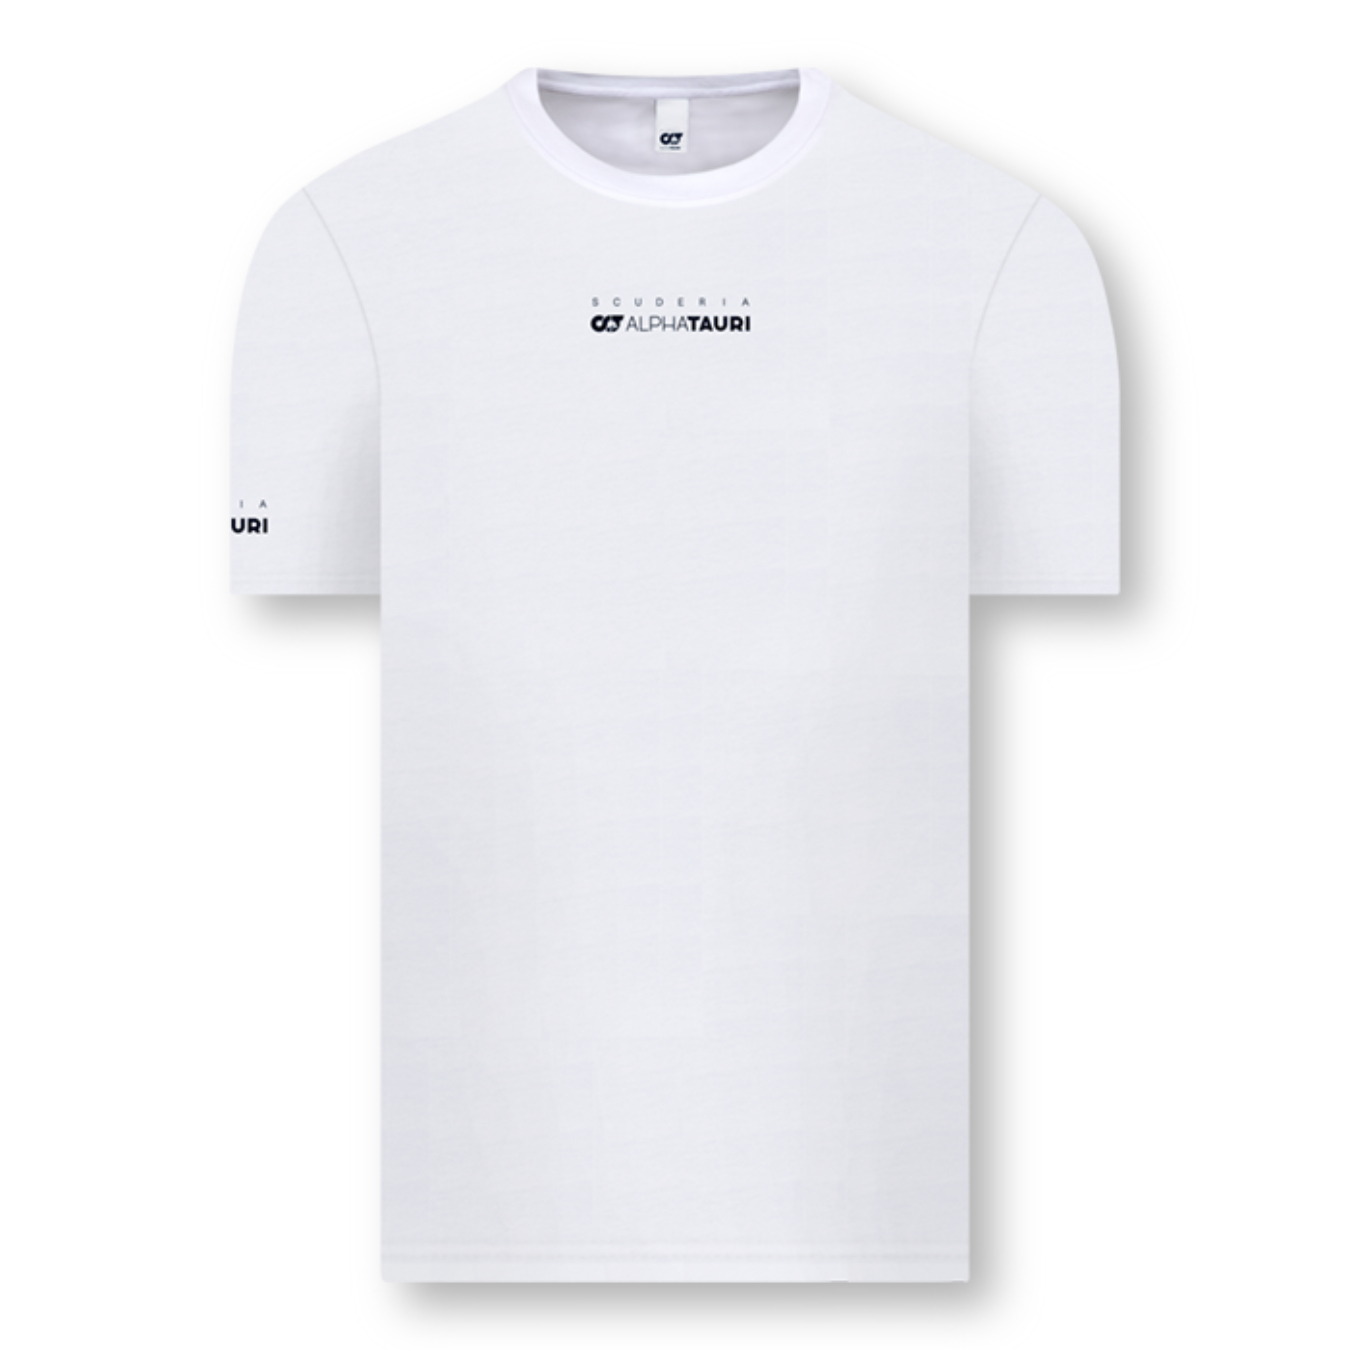 Logo FIA ALPHA TAURI Yuki TSUNODA Men's T-shirt - White